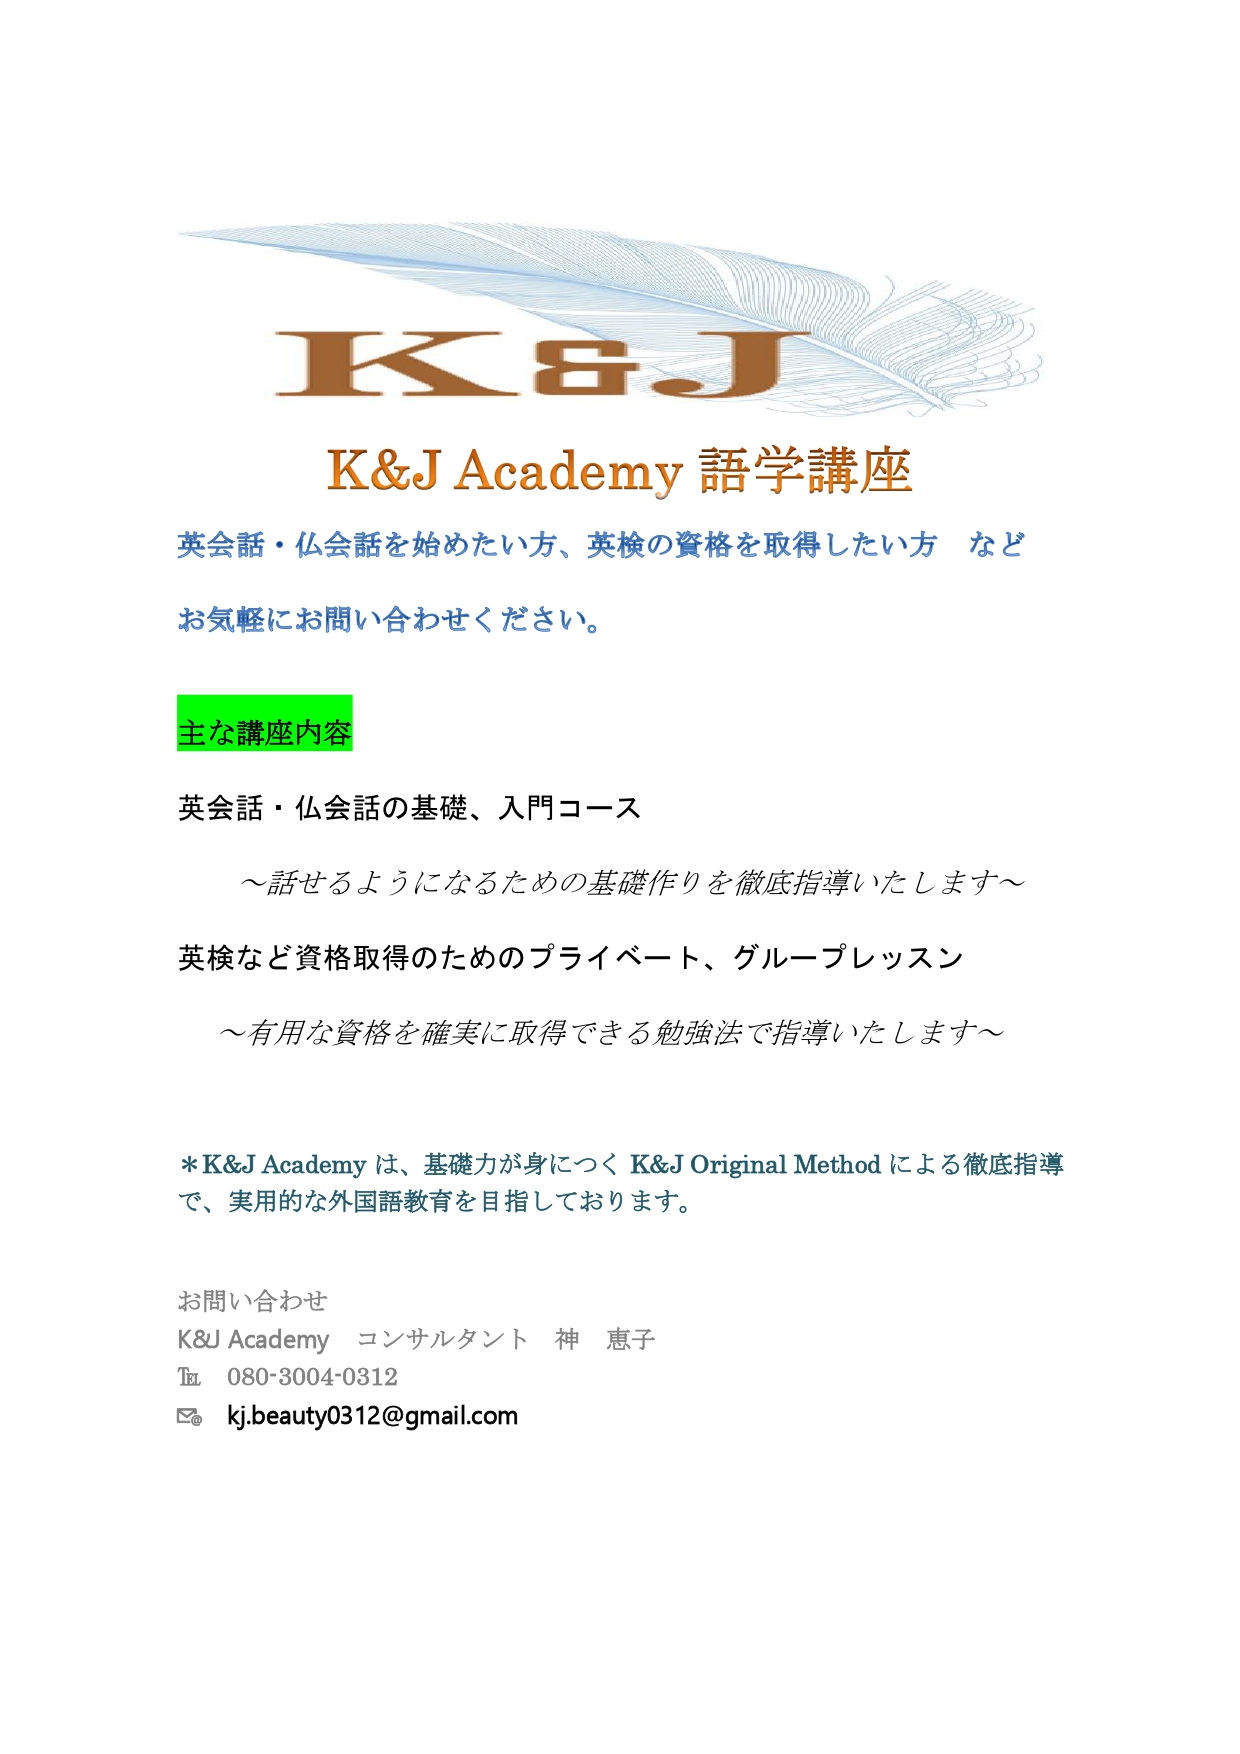 K&J Academy　語学講座案内_pages-to-jpg-0001.jpg